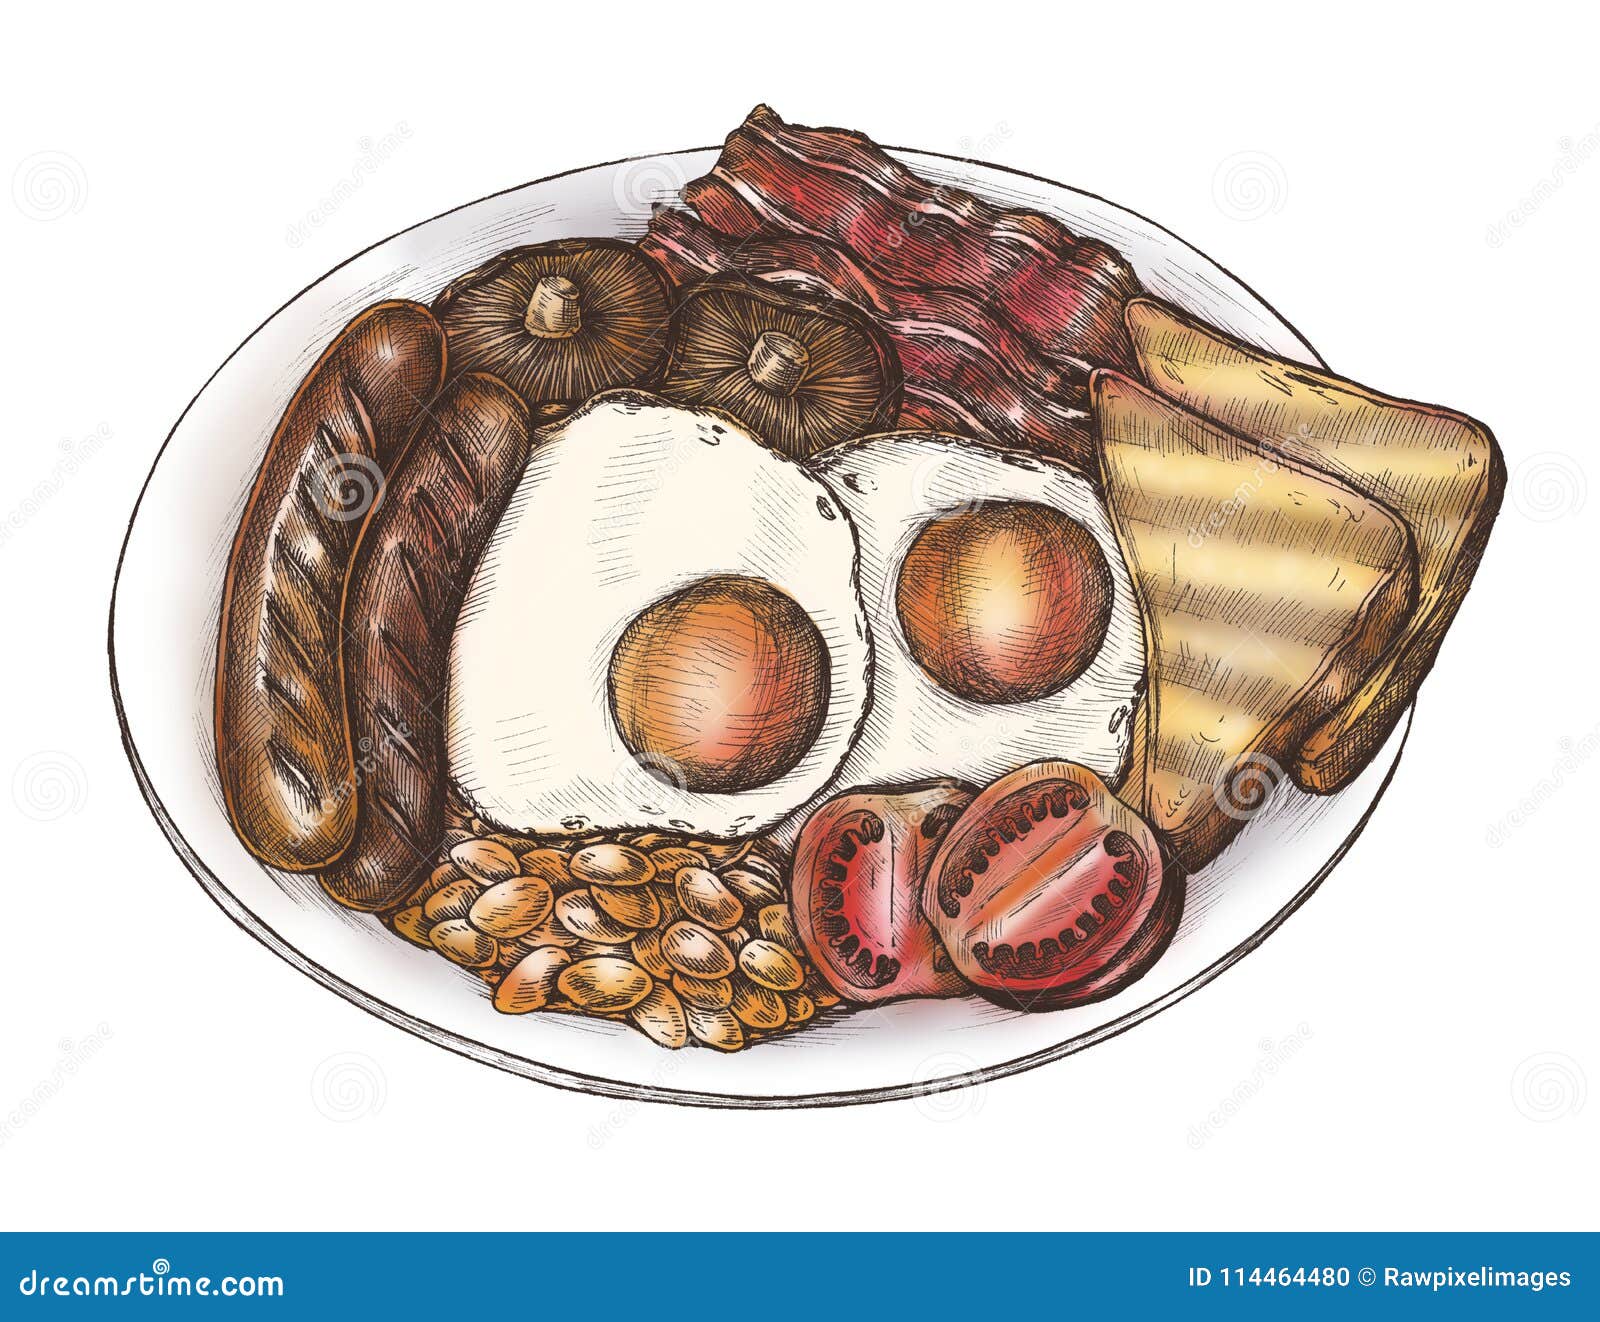 Участки застроены приготовленный завтрак иллюстрированные. Завтрак рисунок. Американский завтрак рисунок. Арт завтрак рисование. Мой завтрак рисунок.